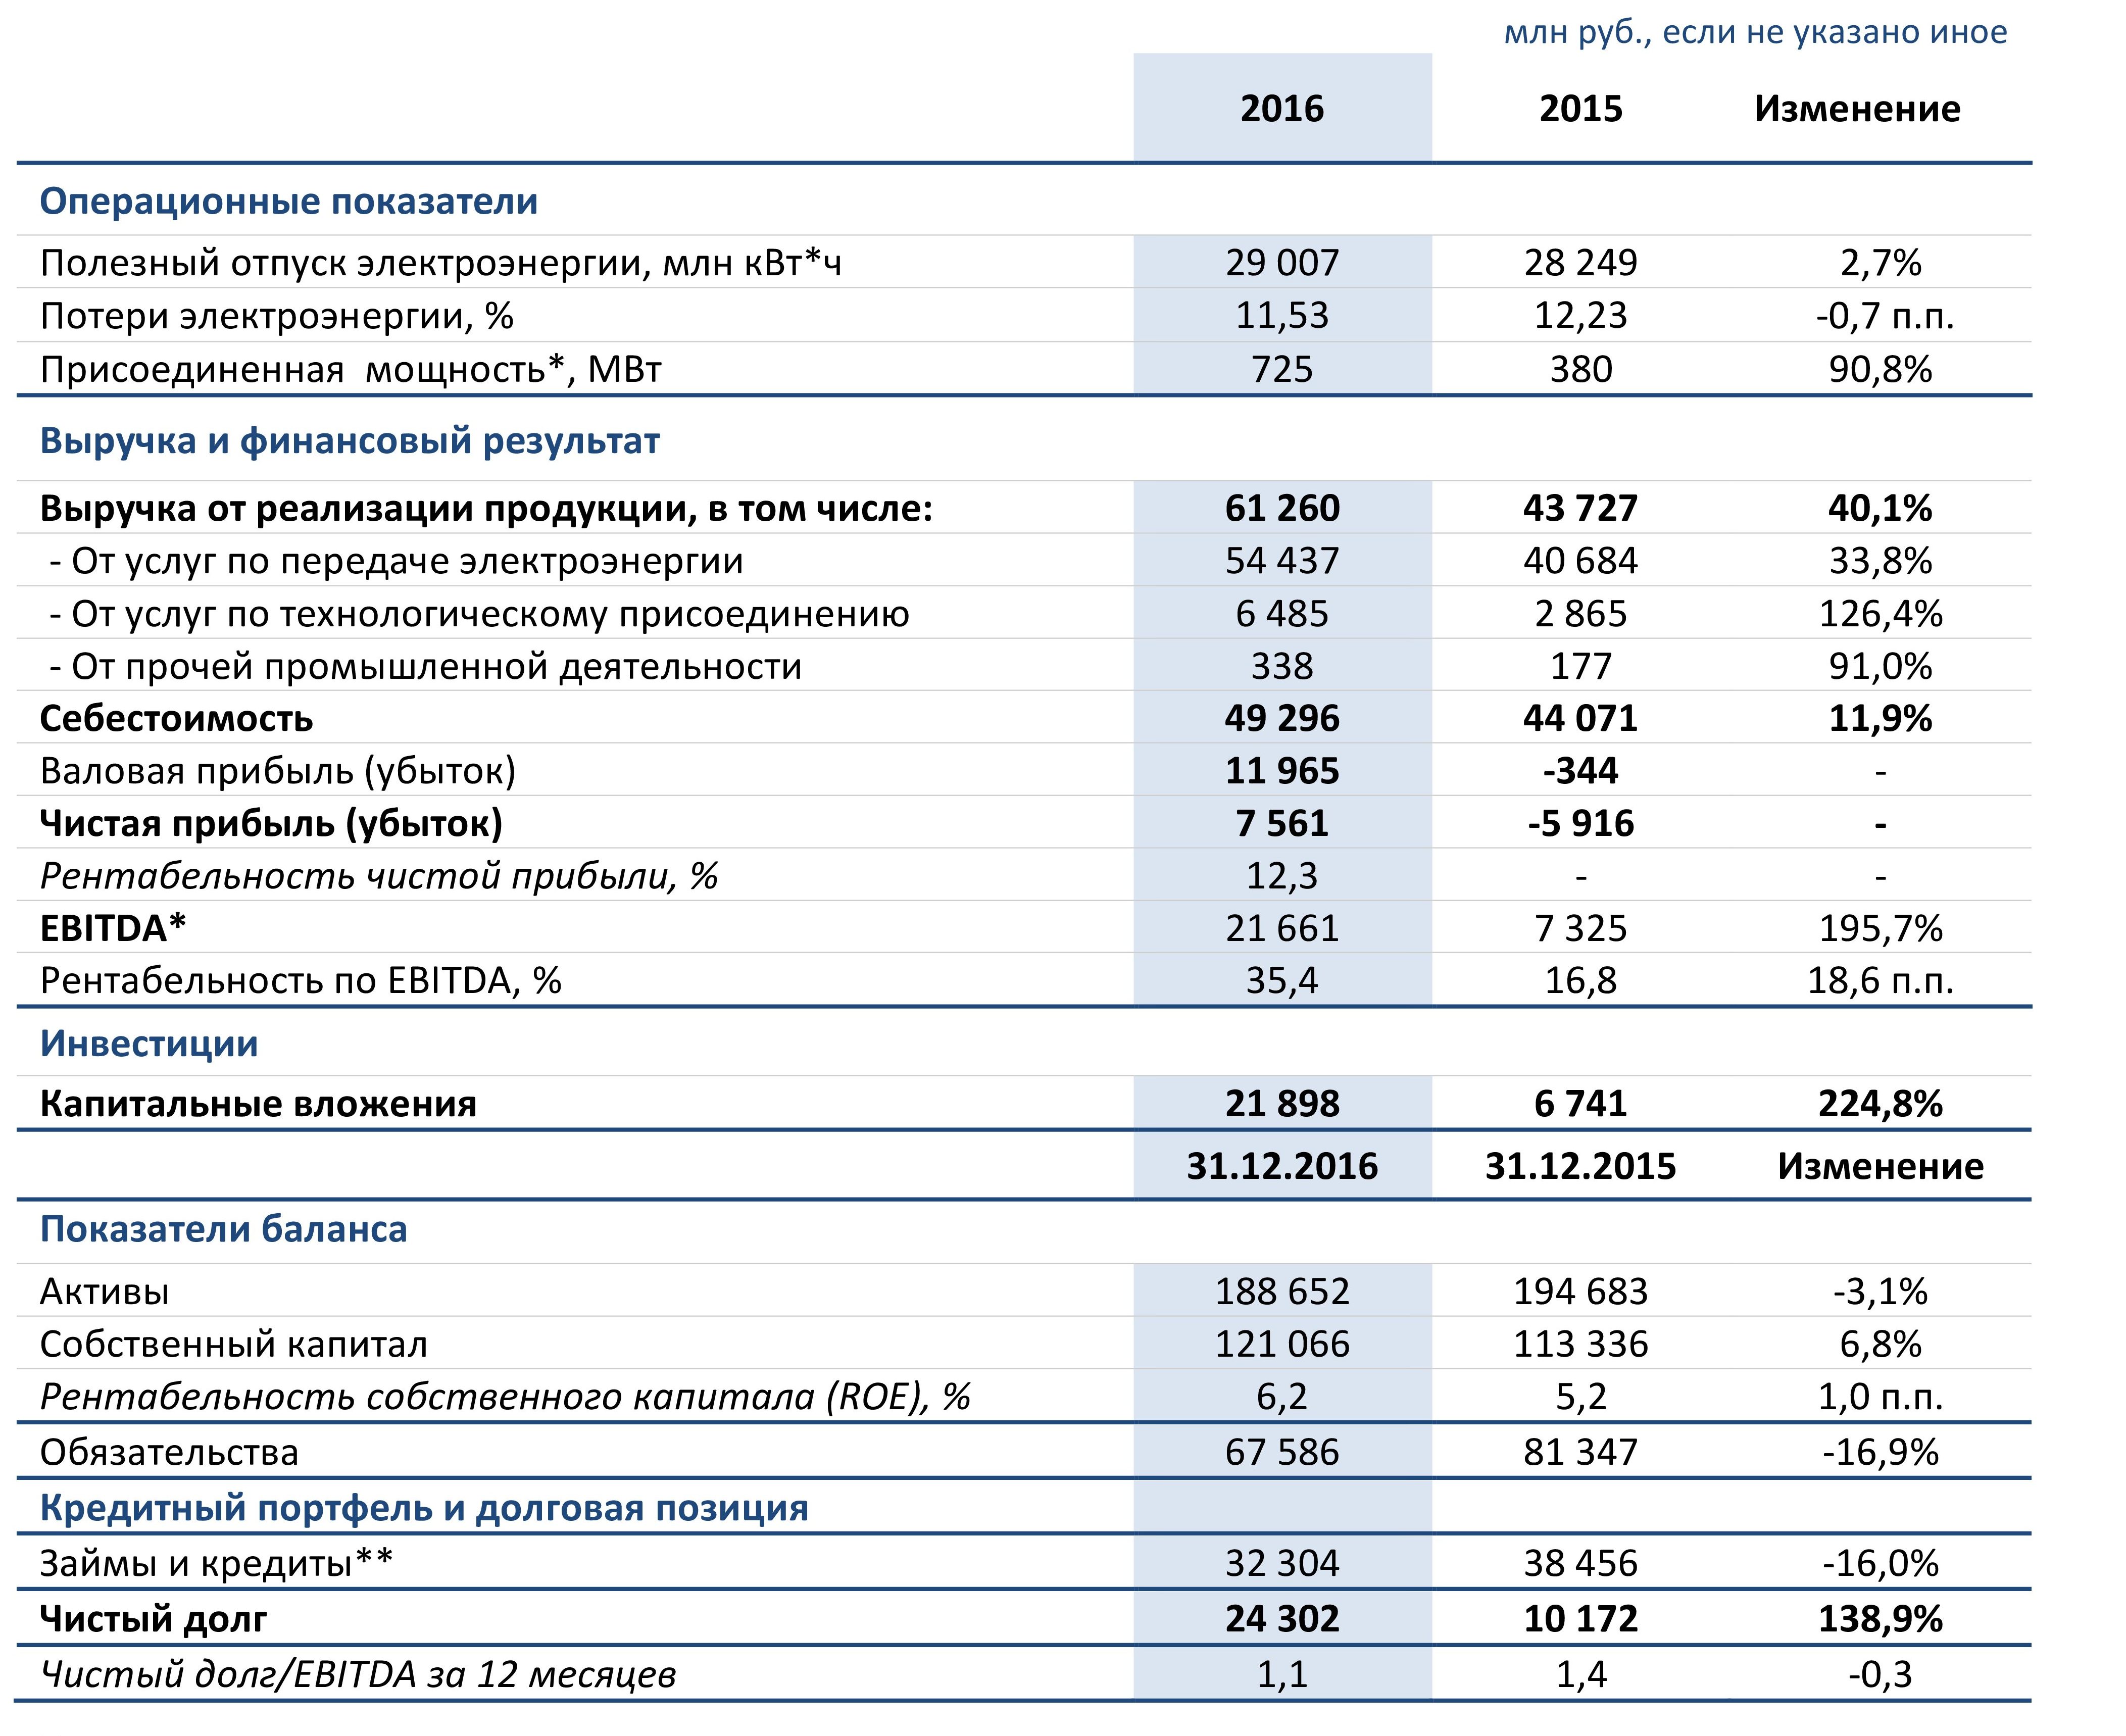 табличка по операционным и финансовым показателям Ленэнерго за 2016 и 2015 года